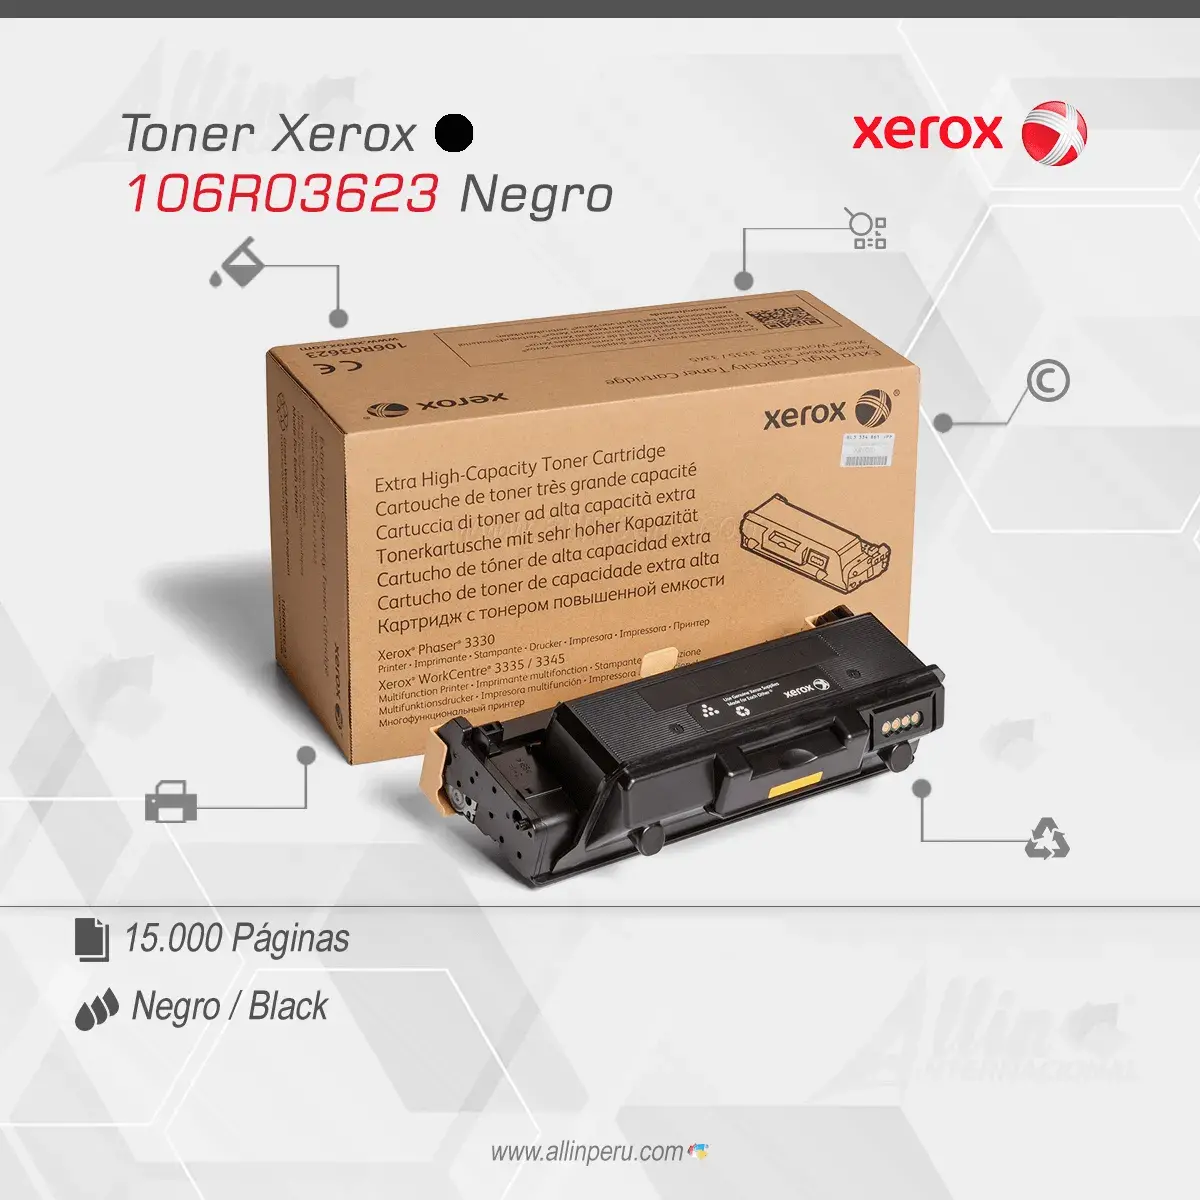 Tóner Xerox 106R03623 este cartucho está hecho para impresoras Phaser 3330